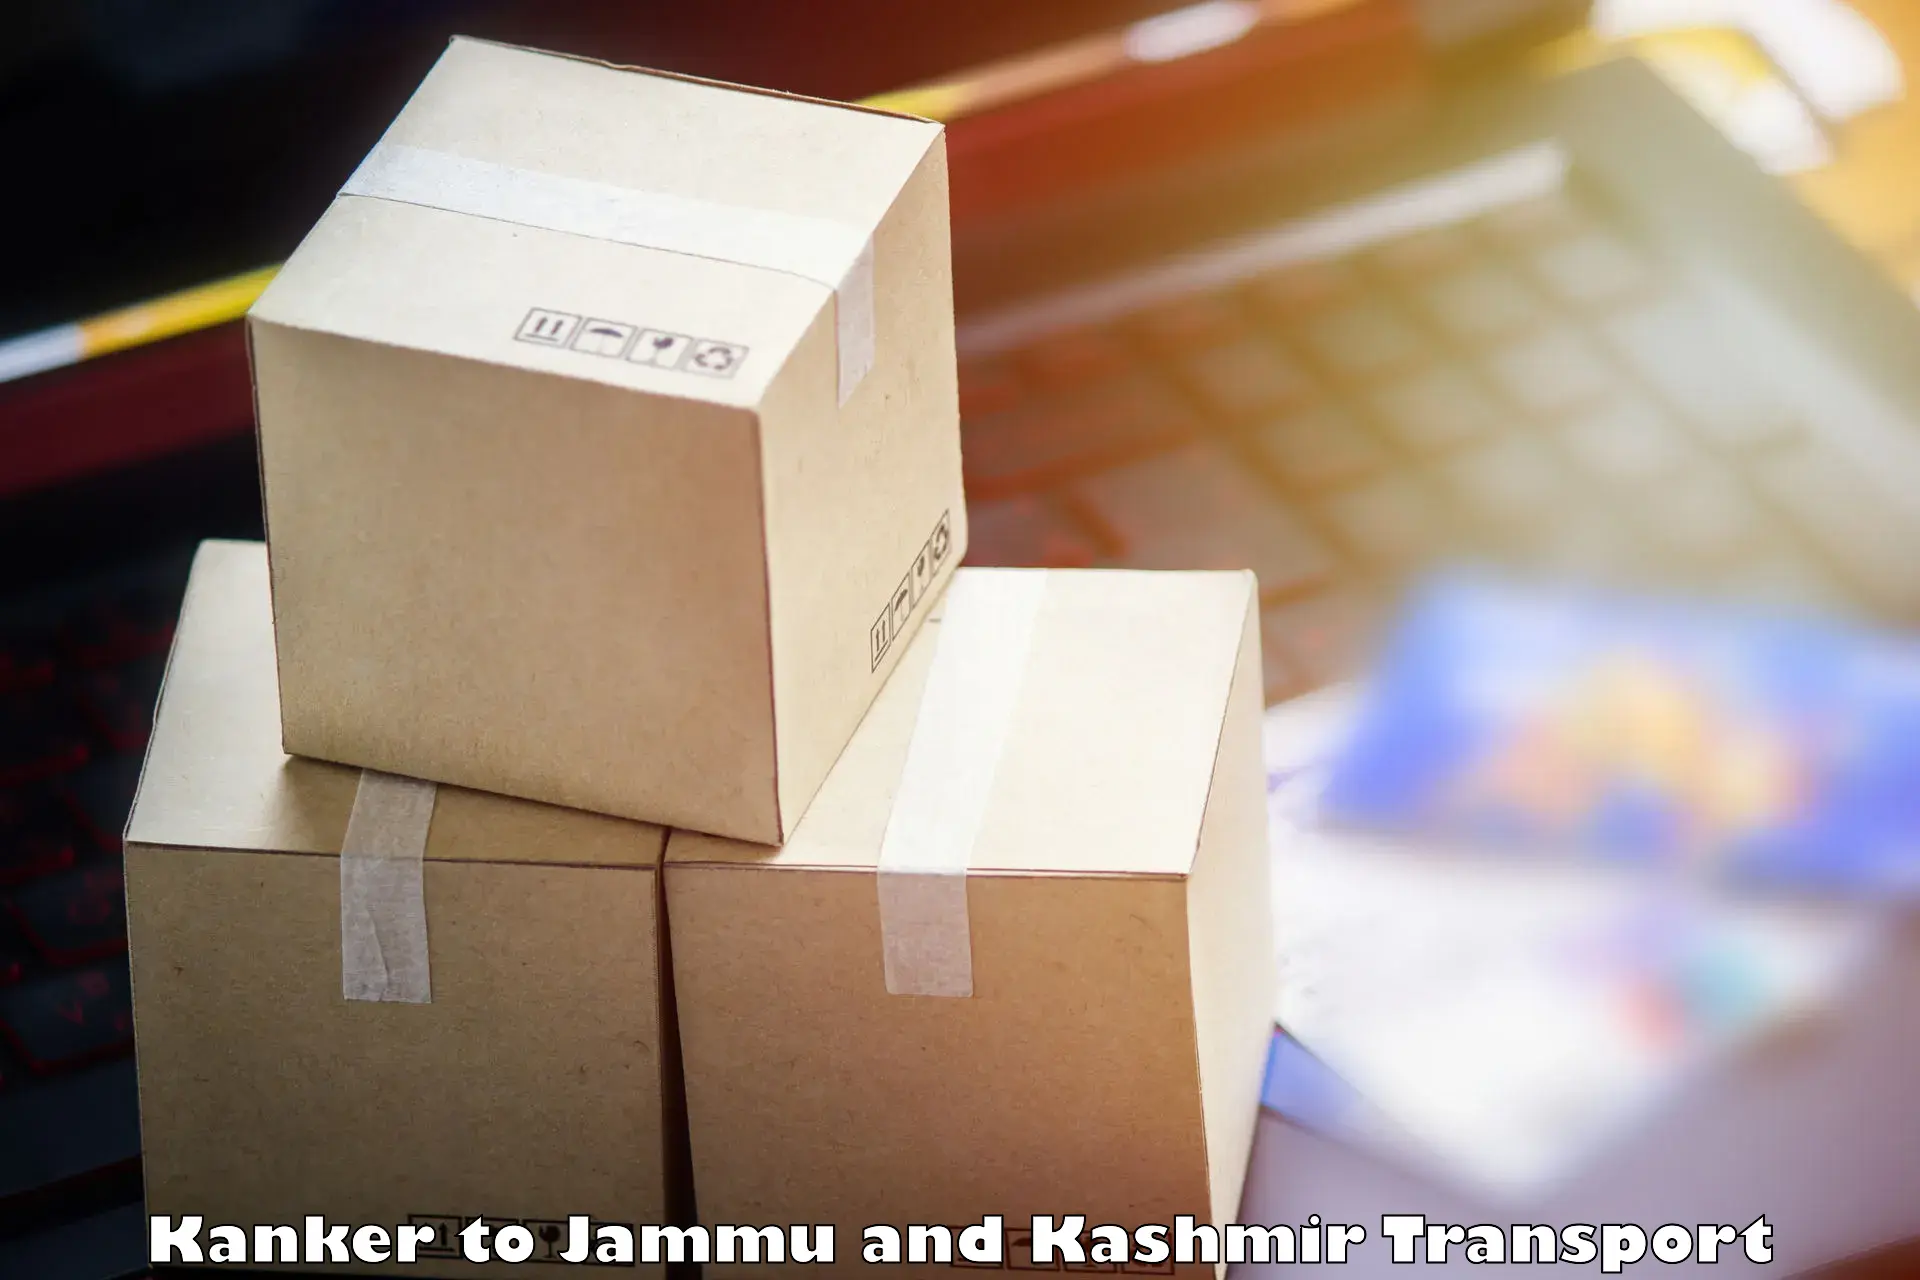 Express transport services Kanker to University of Kashmir Srinagar